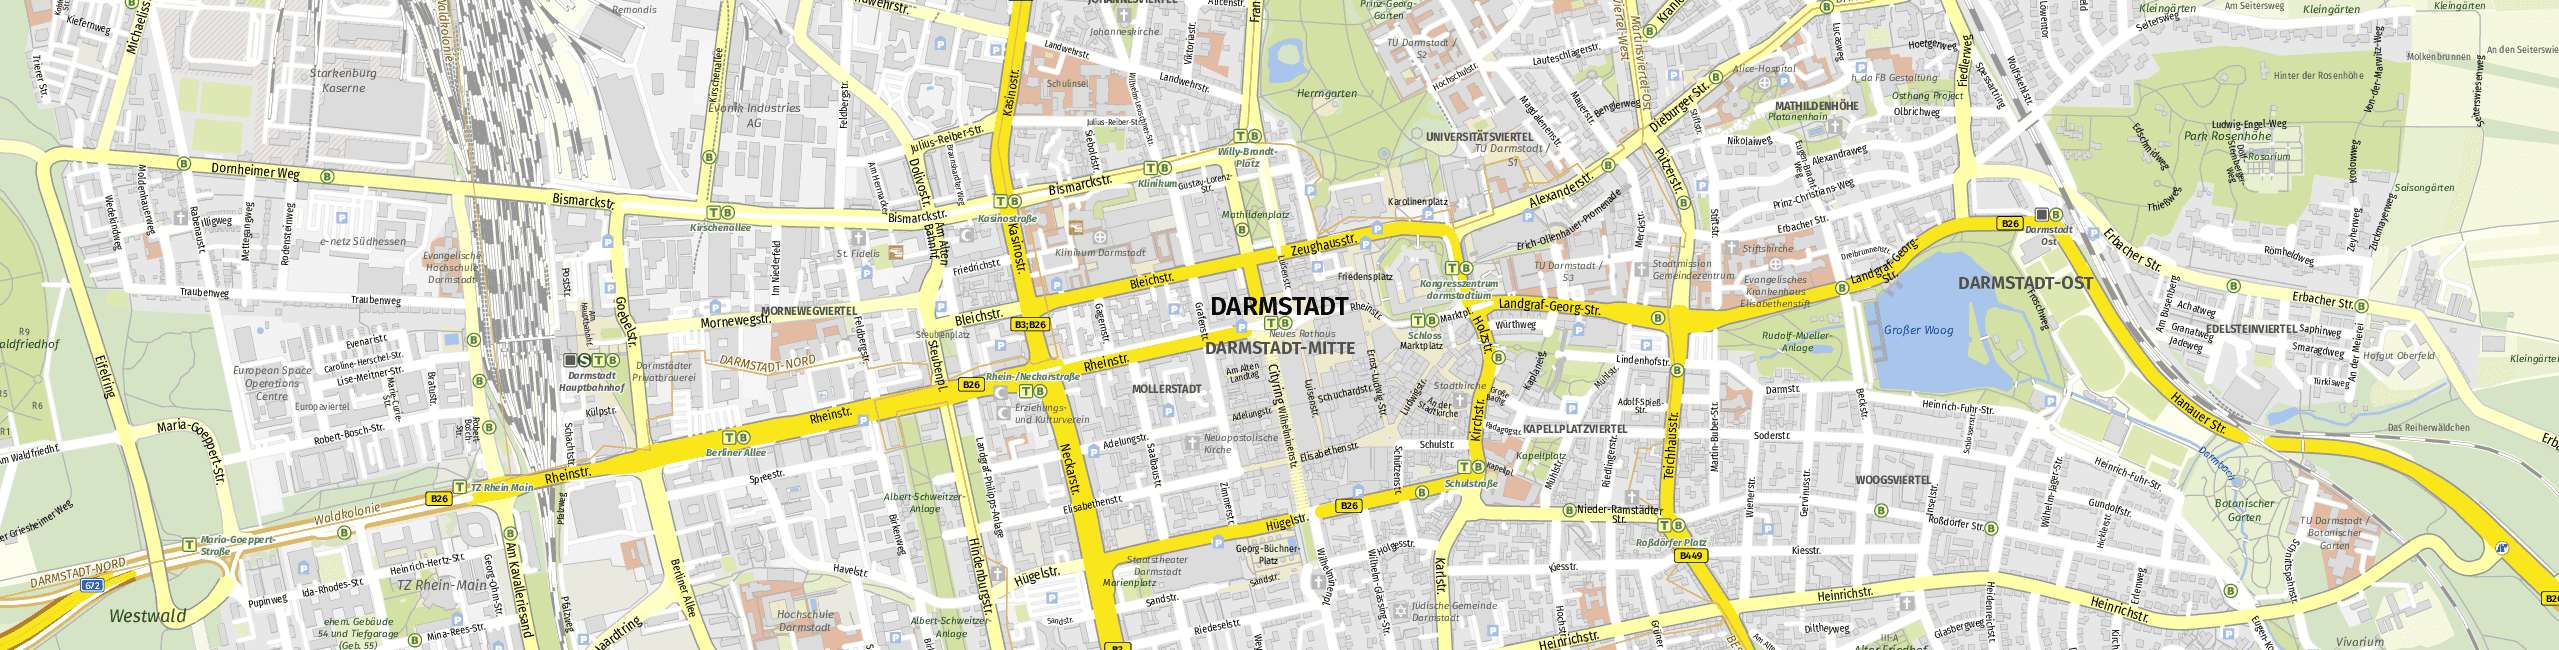 Stadtplan Darmstadt zum Downloaden.